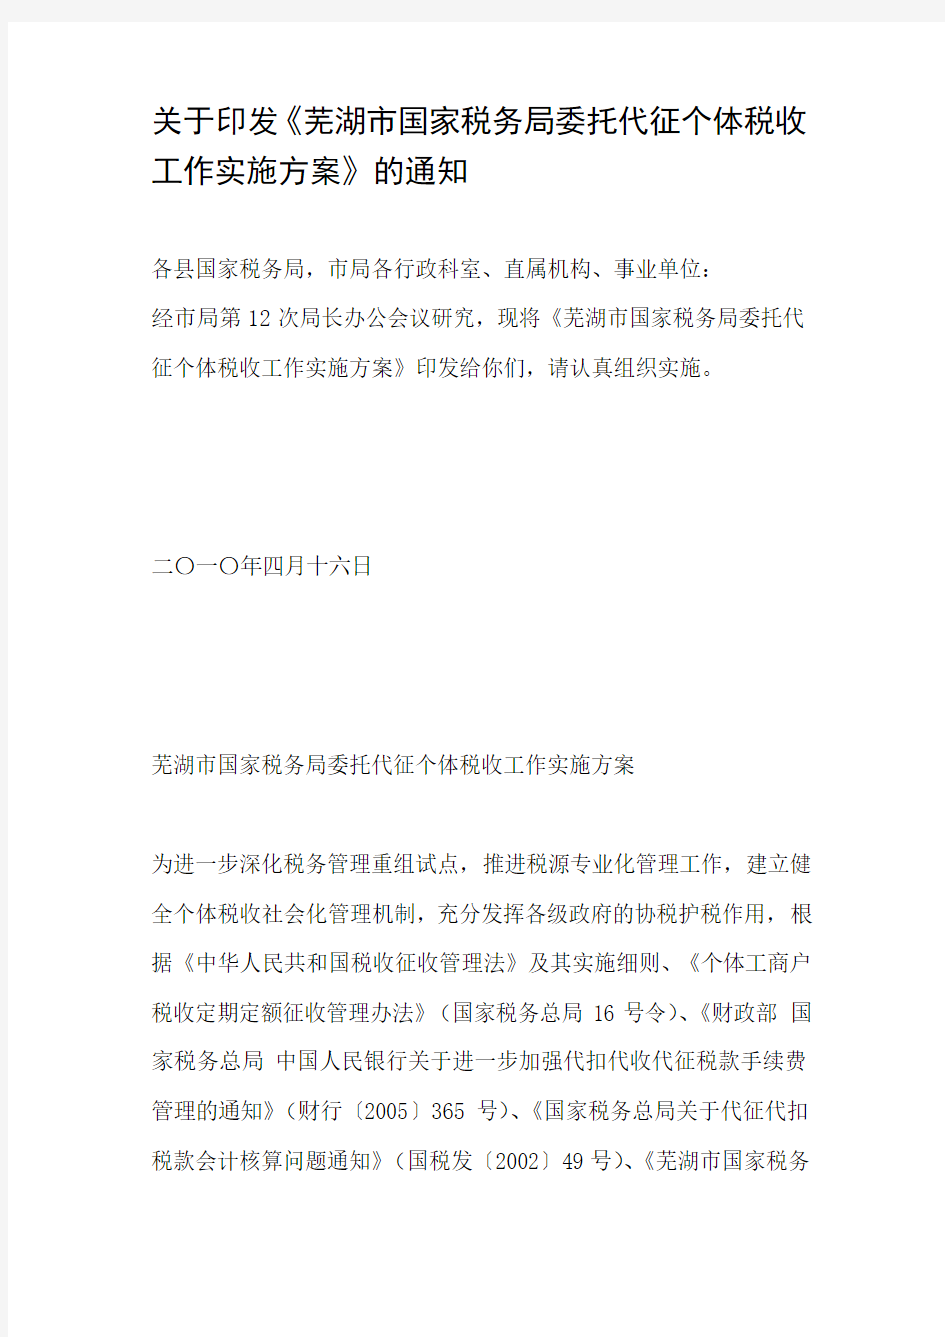 关于印发《芜湖市国家税务局委托代征个体税收工作实施方案》的通知